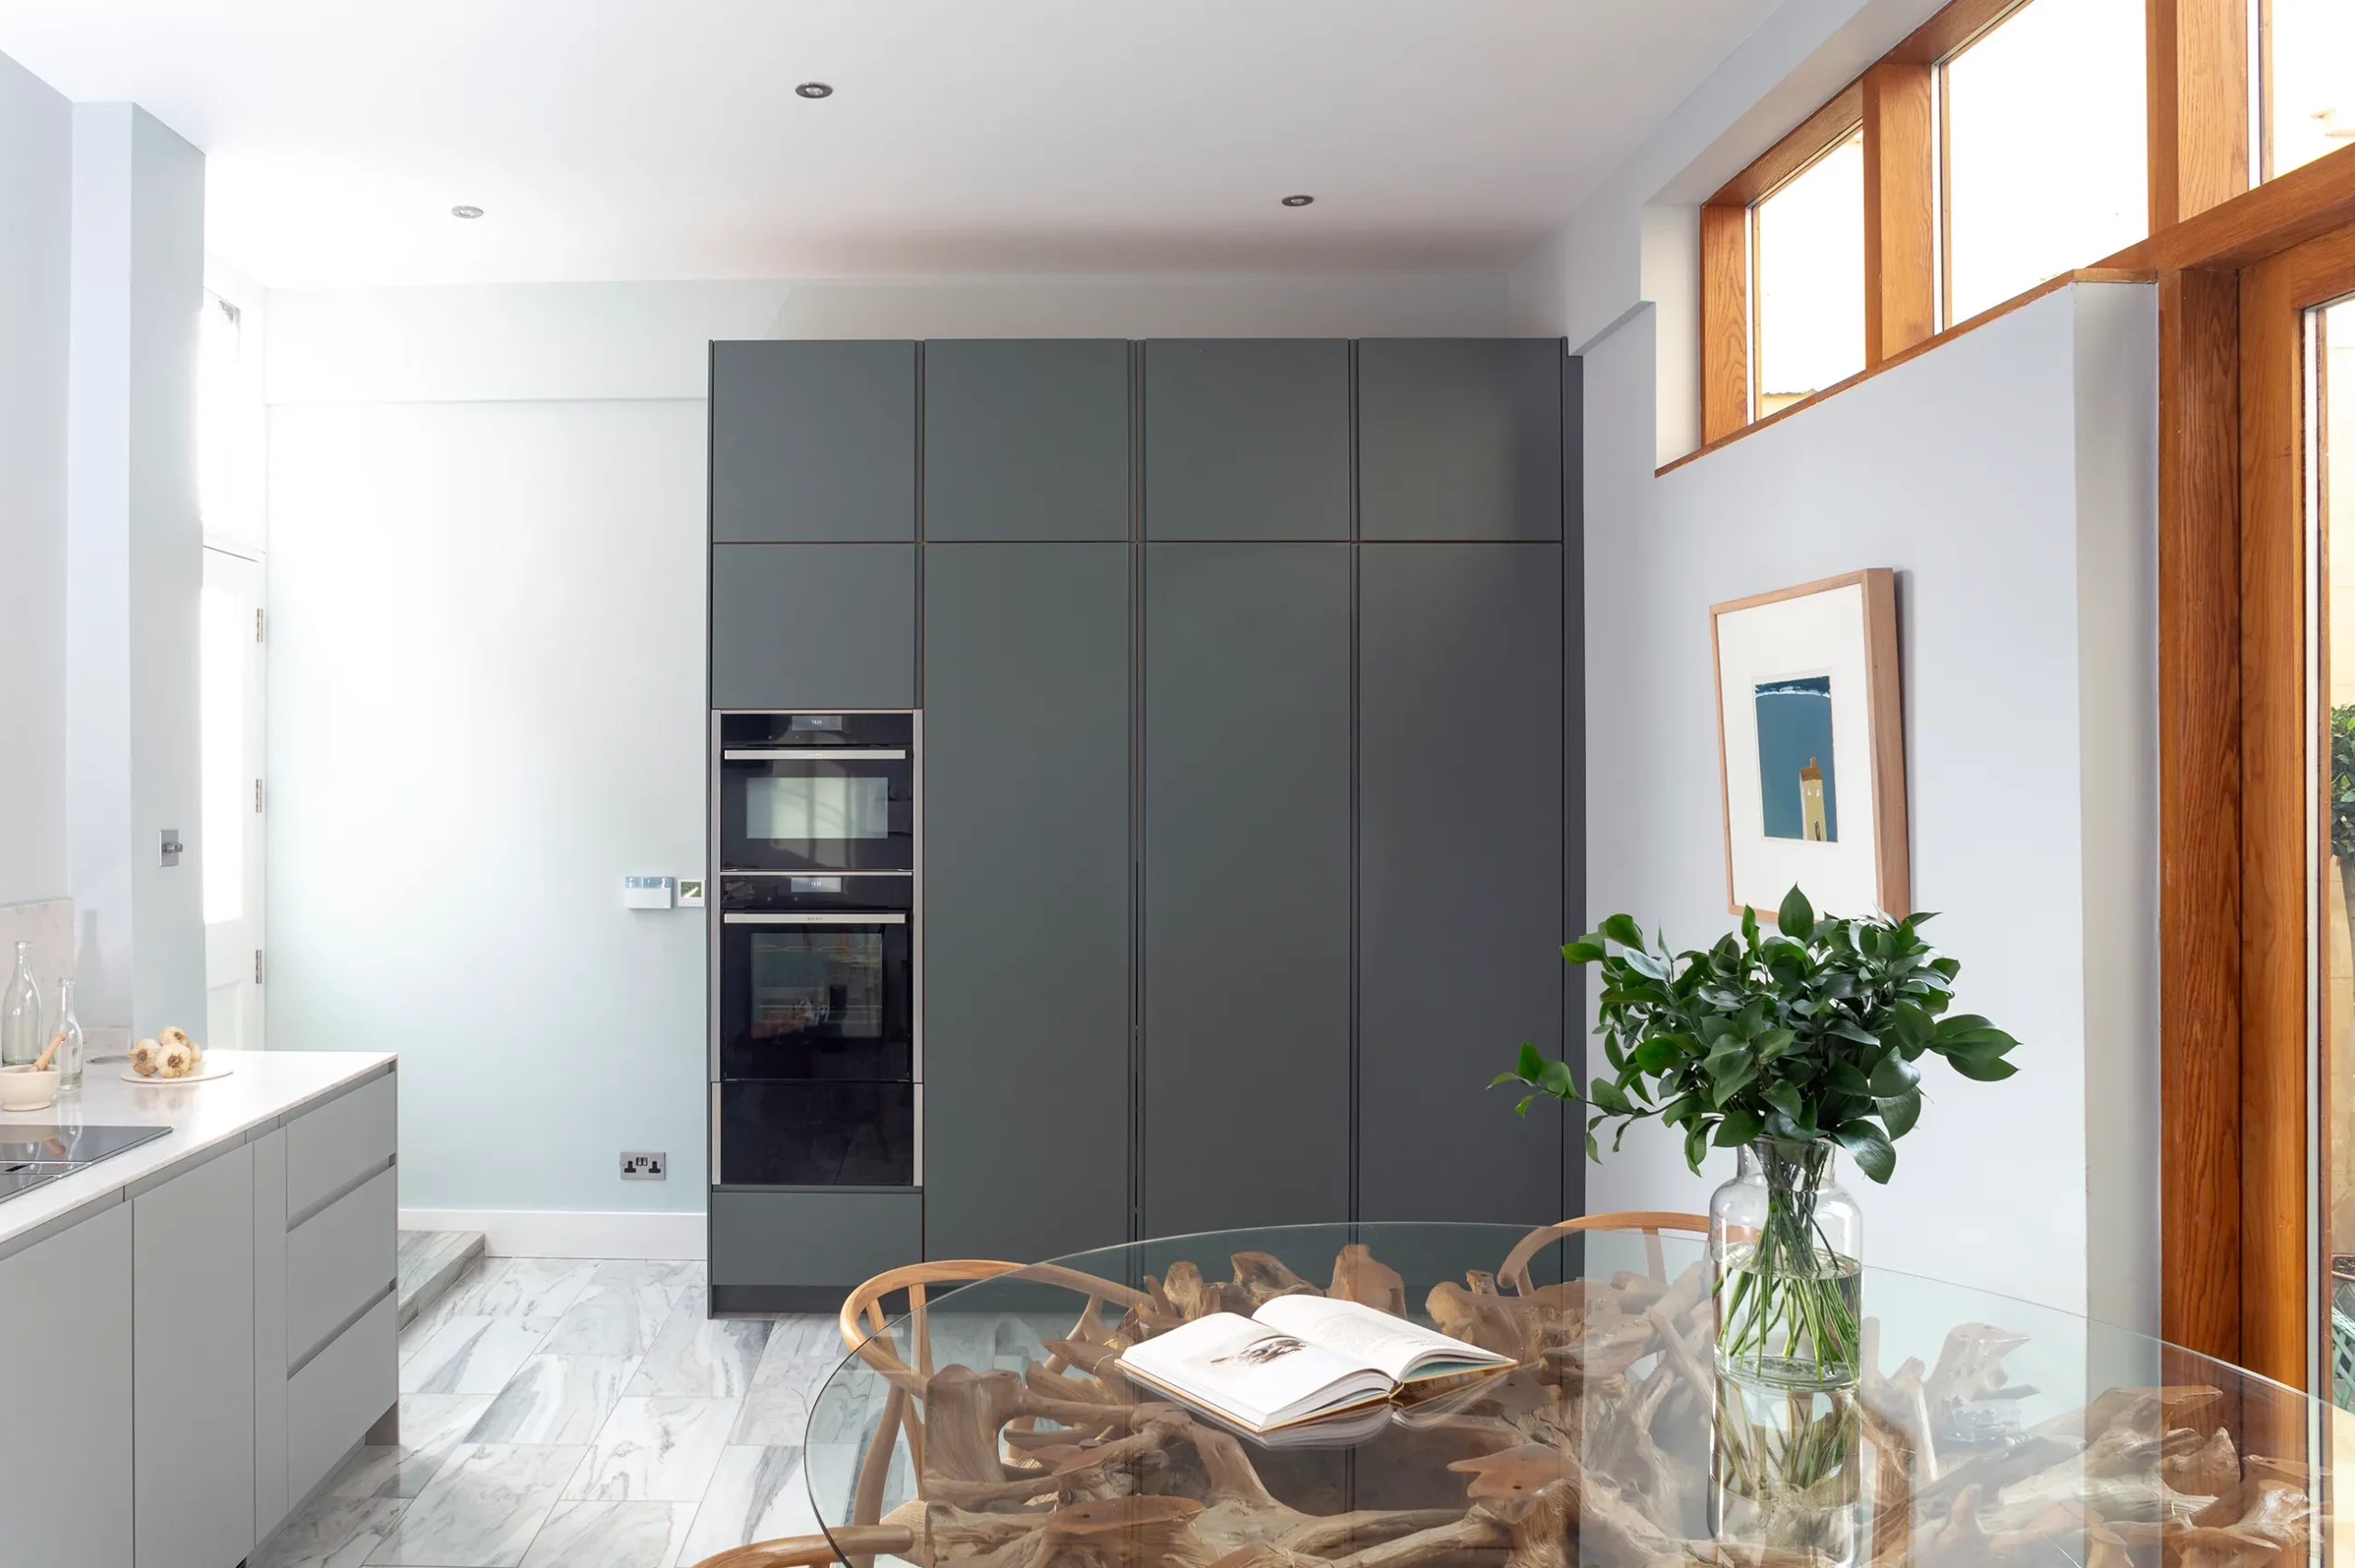 Bespoke Minimalist Kitchen Design & Installation | Bath Kitchen Co